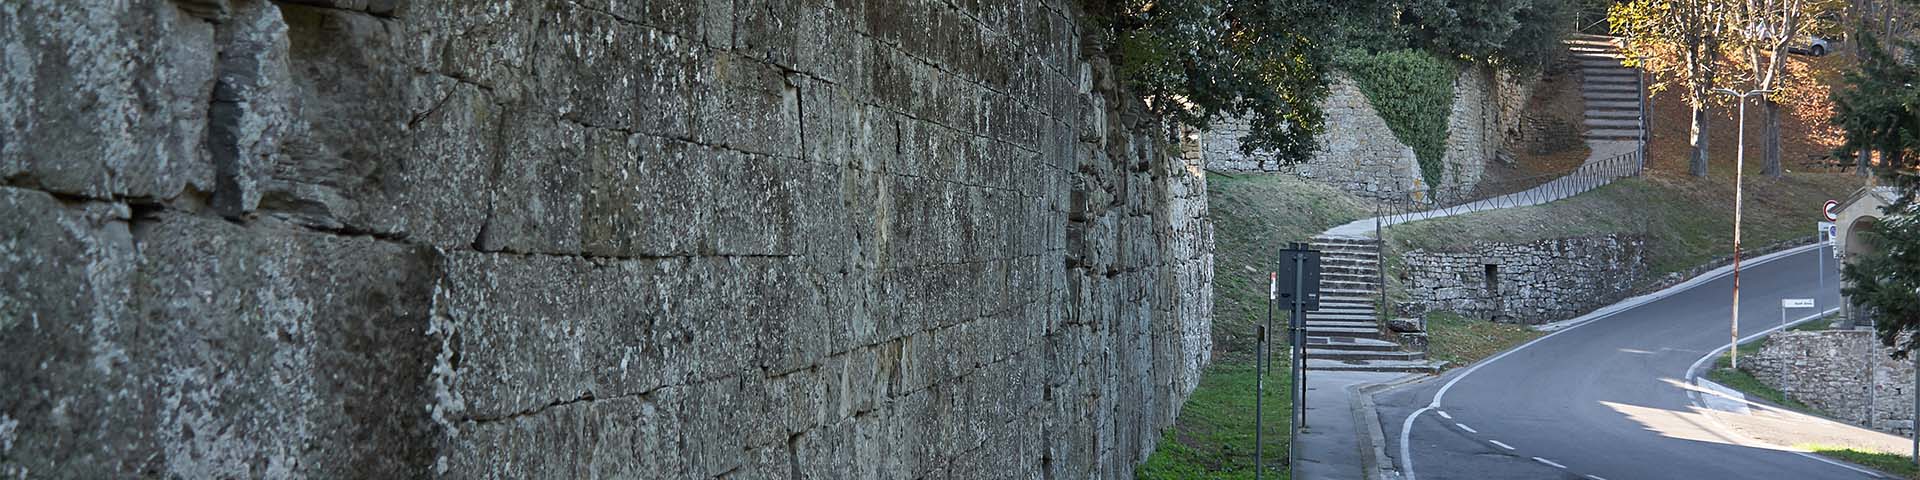 Walls of Fiesole